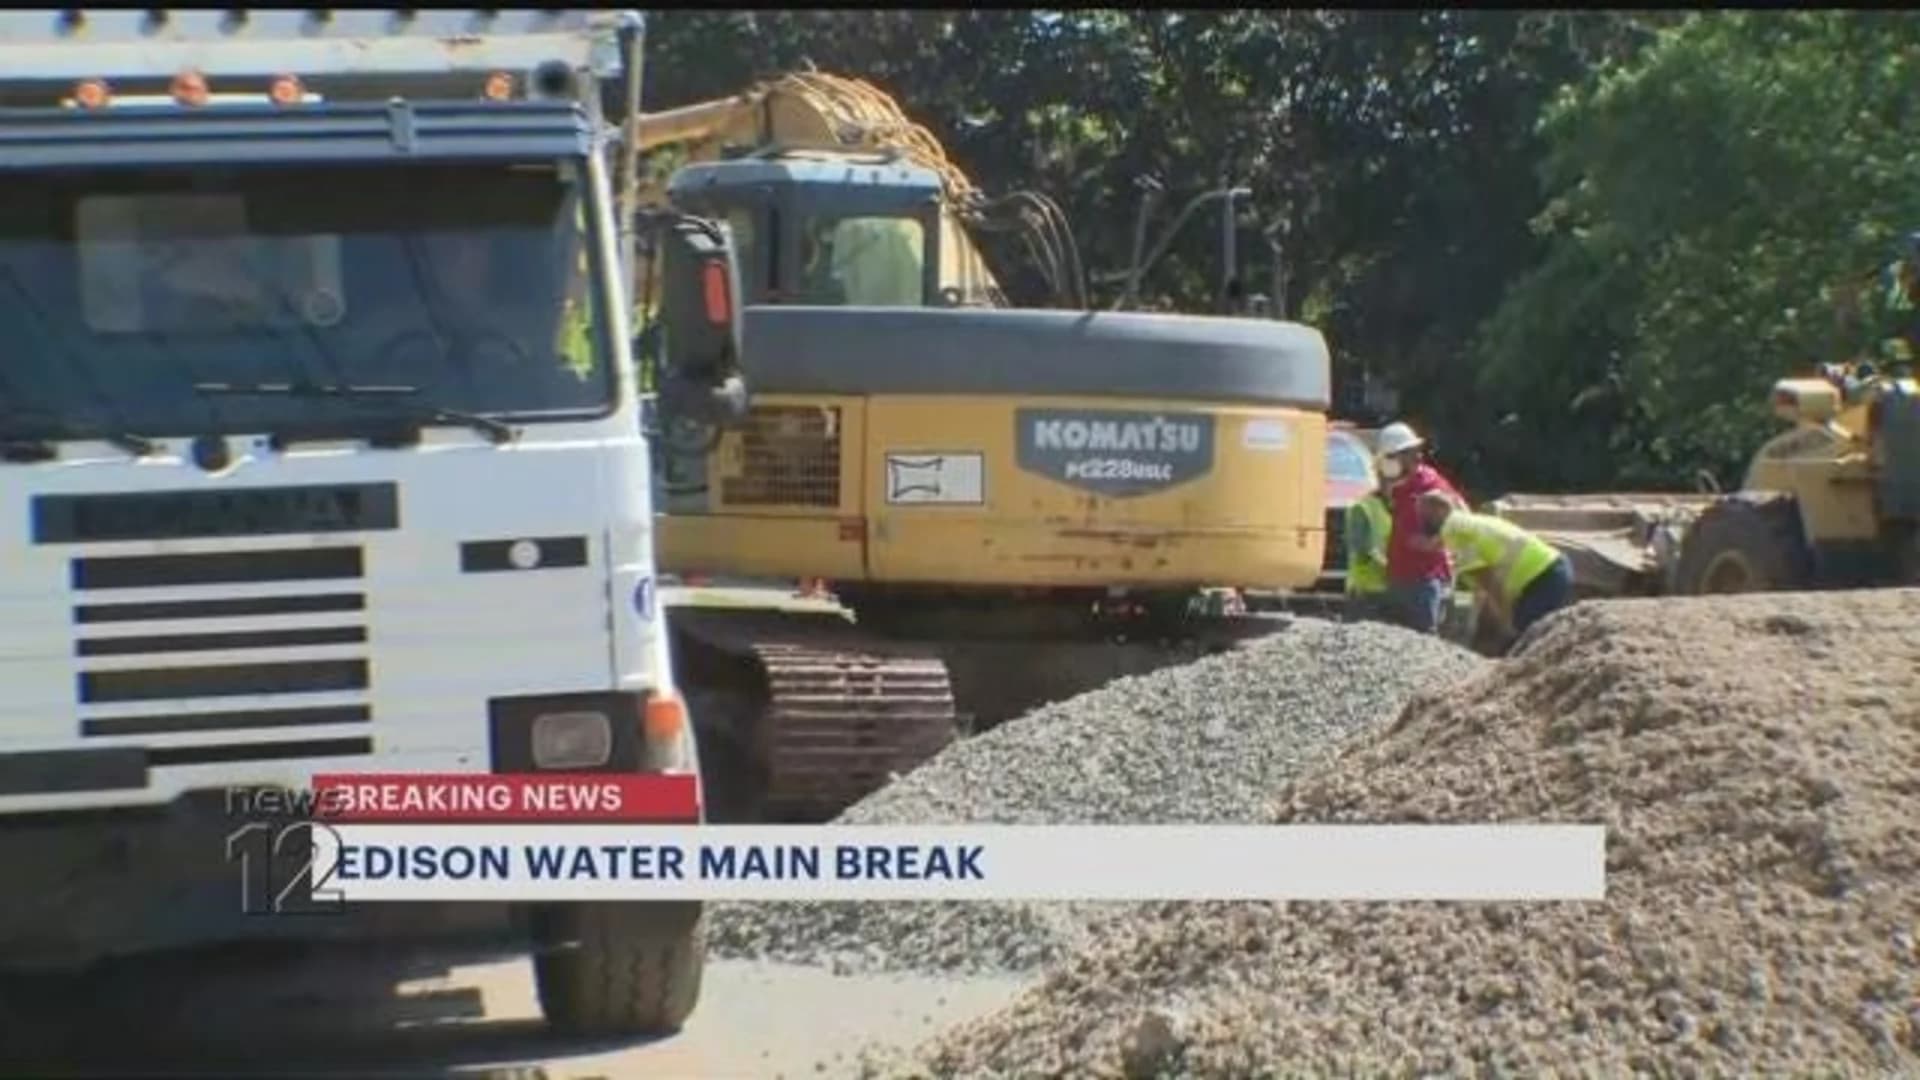 Boil water advisory remains in effect in Edison following water main break